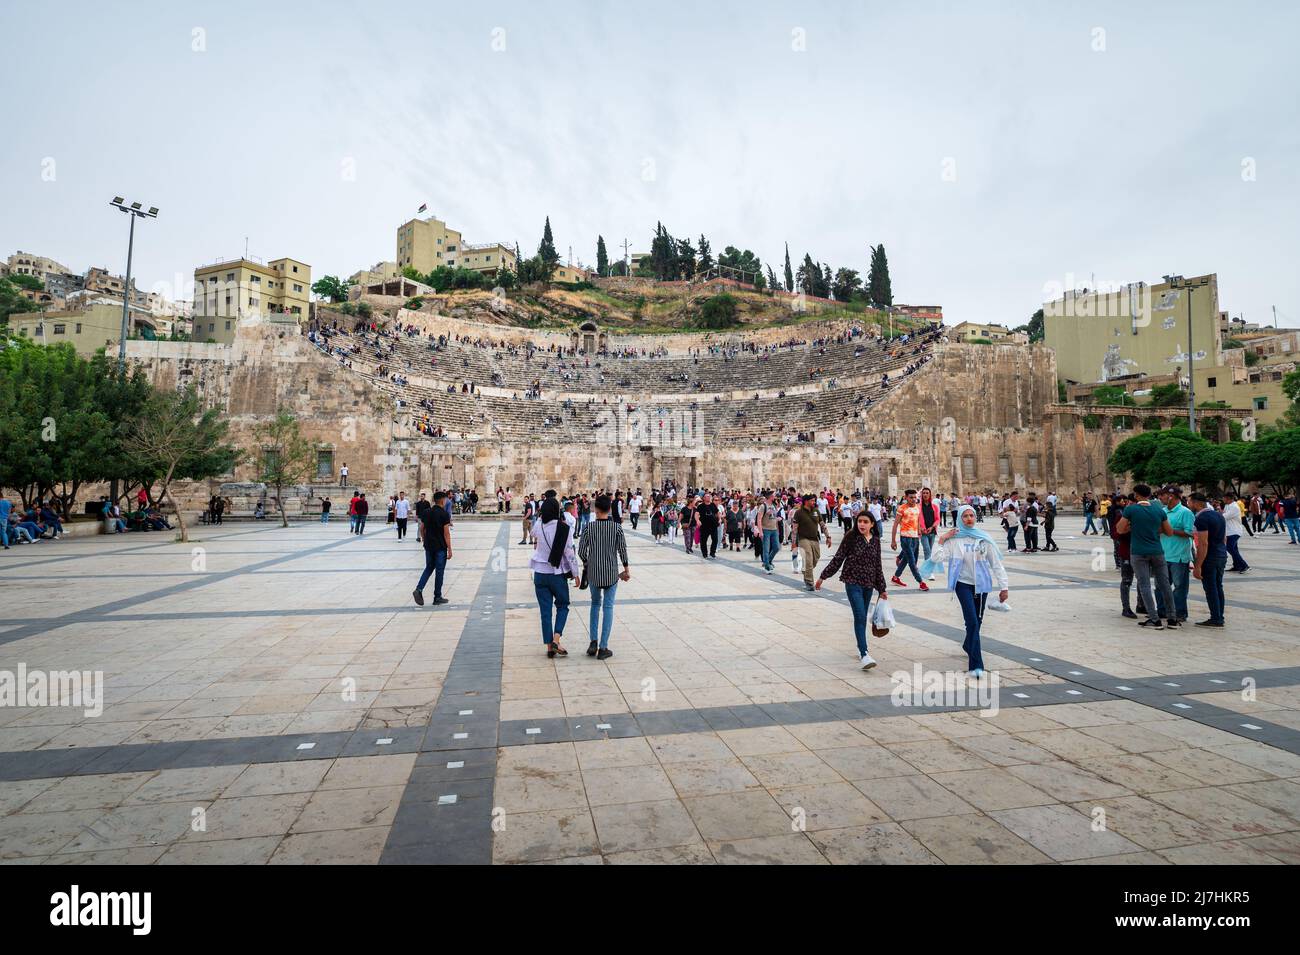 Amman, Jordania - 2 de mayo de 2022: Gente reuniéndose en el centro de Amman frente a la antigua estructura del teatro romano para celebrar las vacaciones de los musulmanes Eid entre los resi Foto de stock